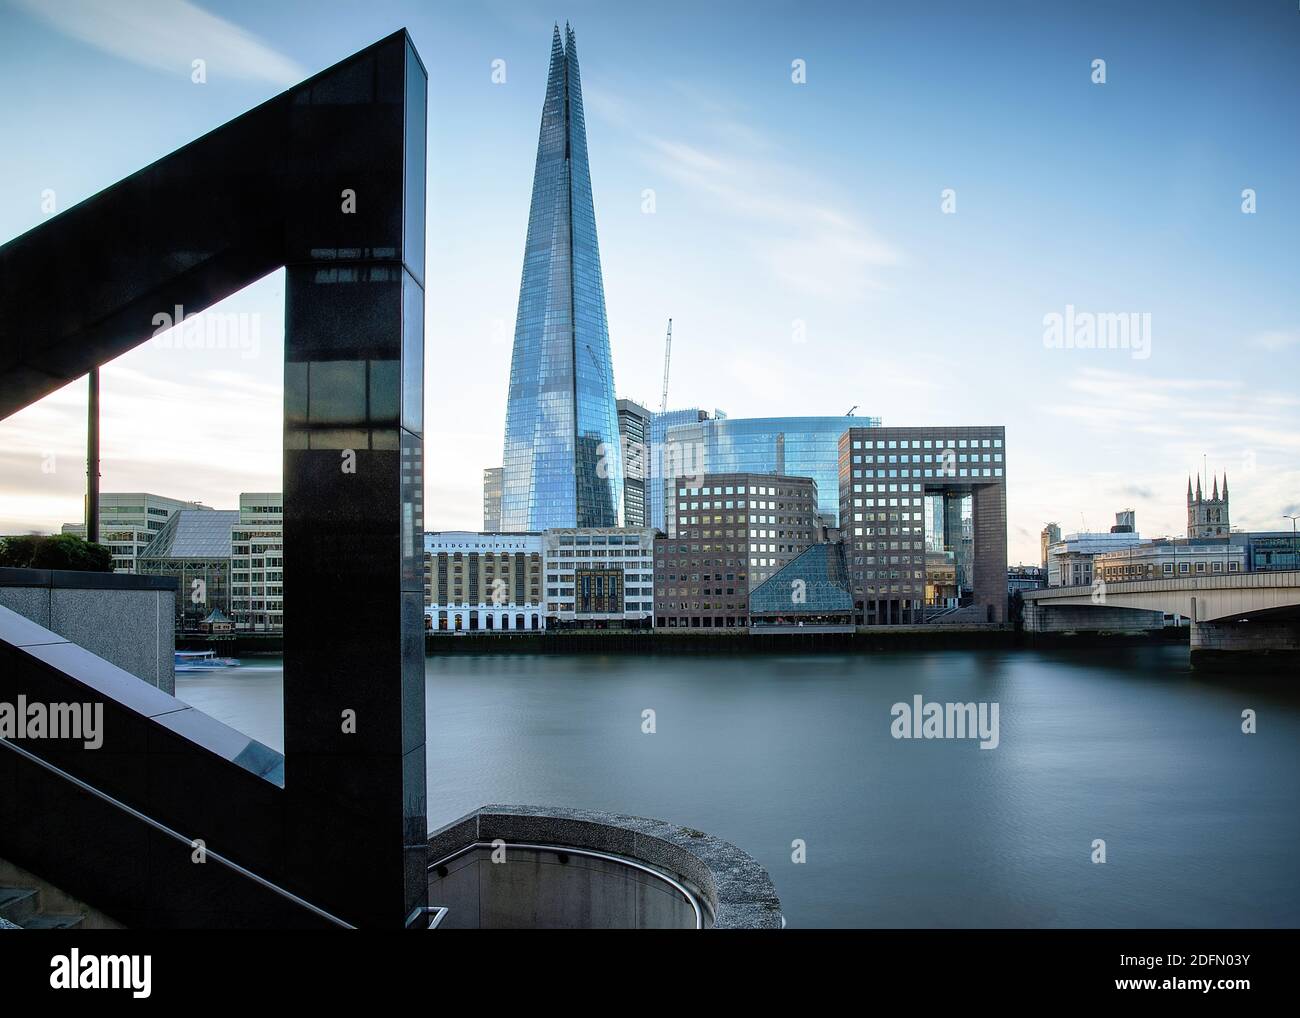 Londres, Royaume-Uni - janvier 2020 : vue sur la Tamise jusqu'au Shard sur la rive sud. Vous pourrez admirer les œuvres d'art triangulaires sur la terrasse publique de St Magn Banque D'Images